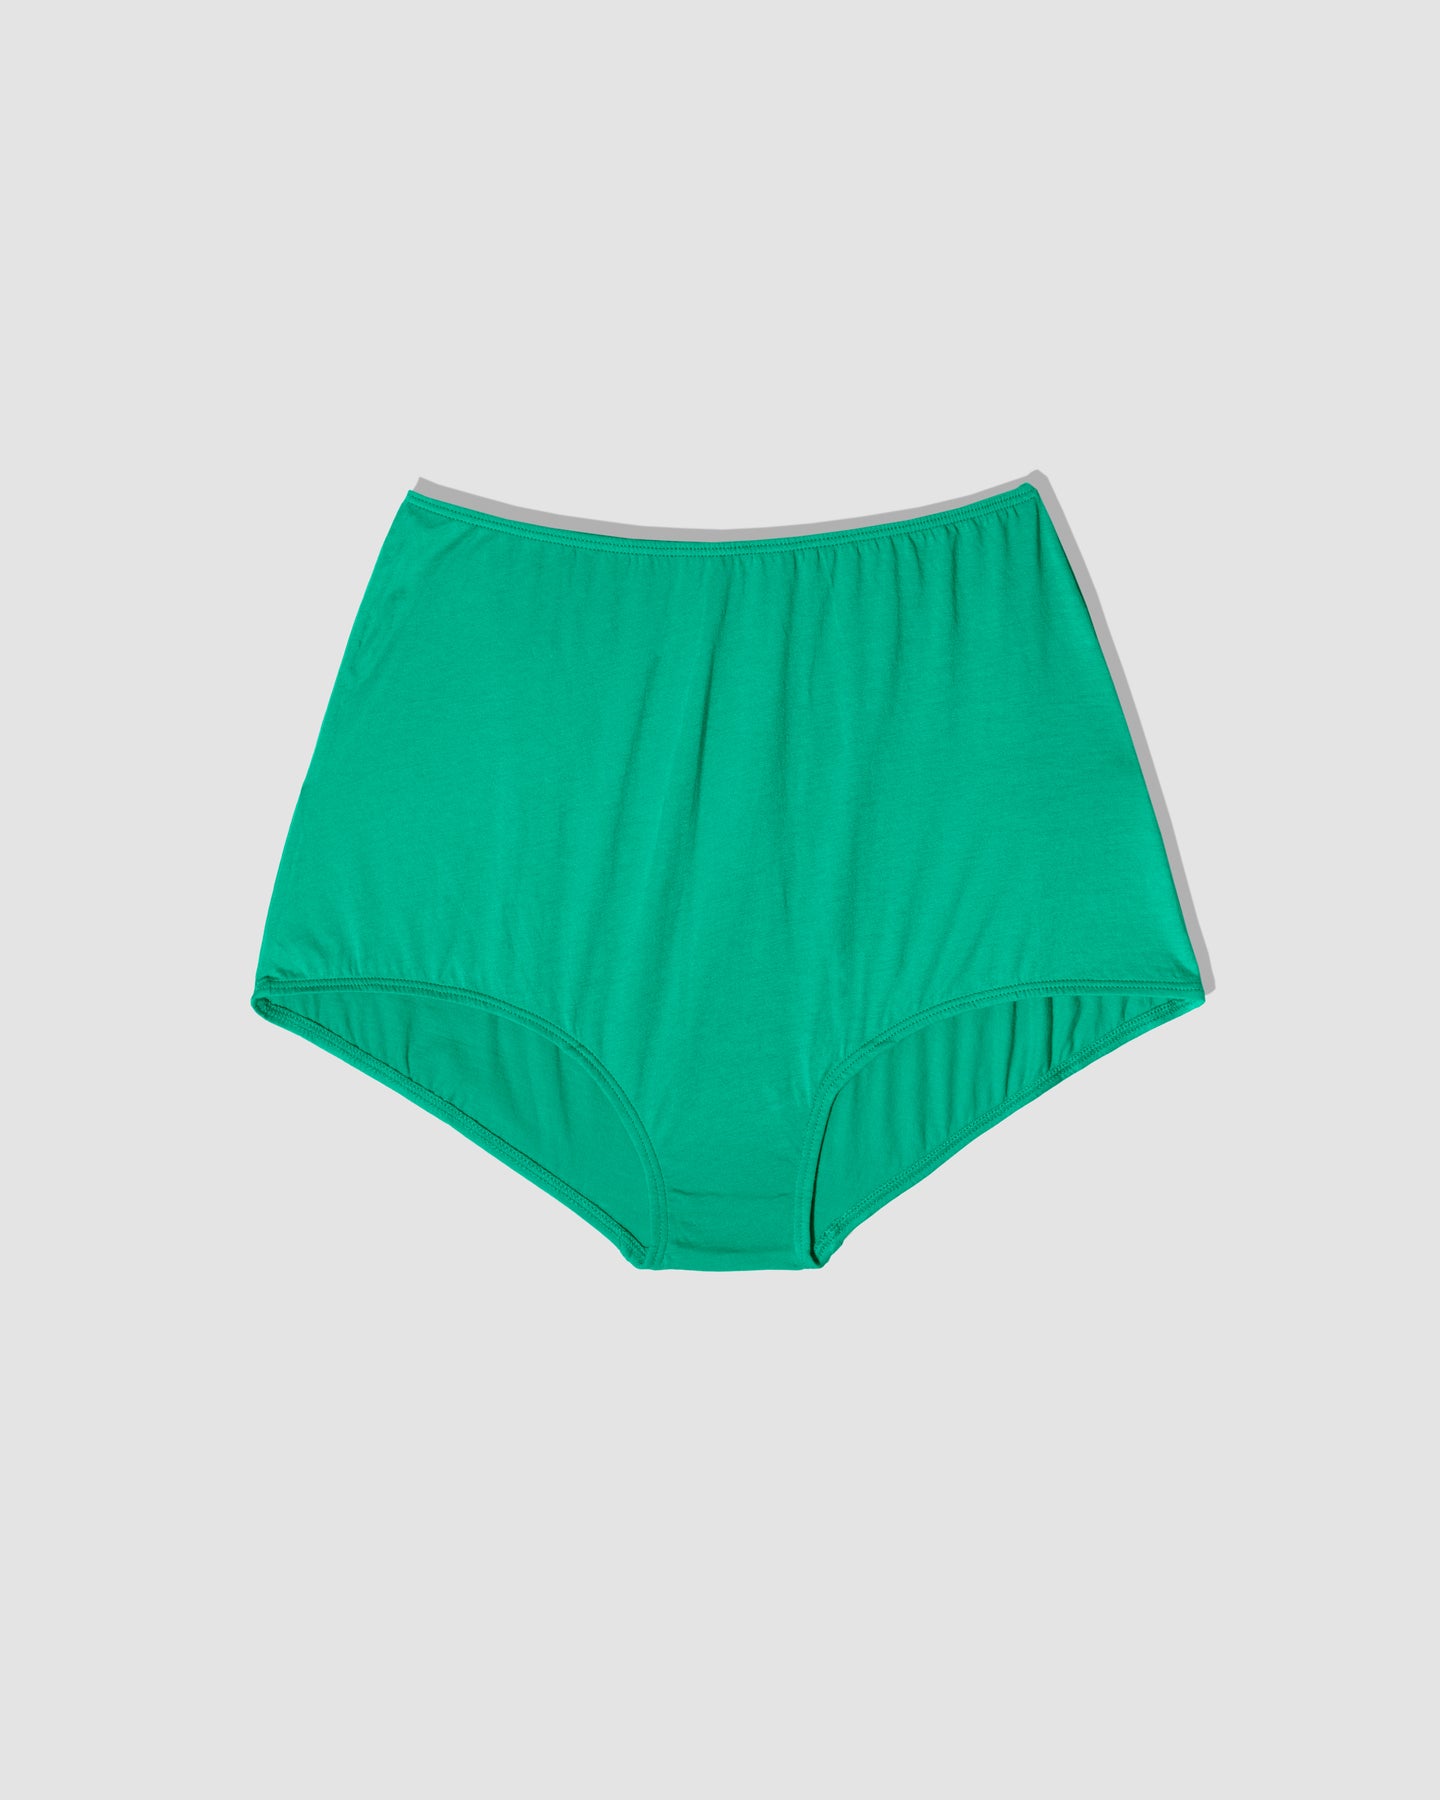 Ermanno Scervino Green Push Up Bra 100% Cotton Women's Underwear